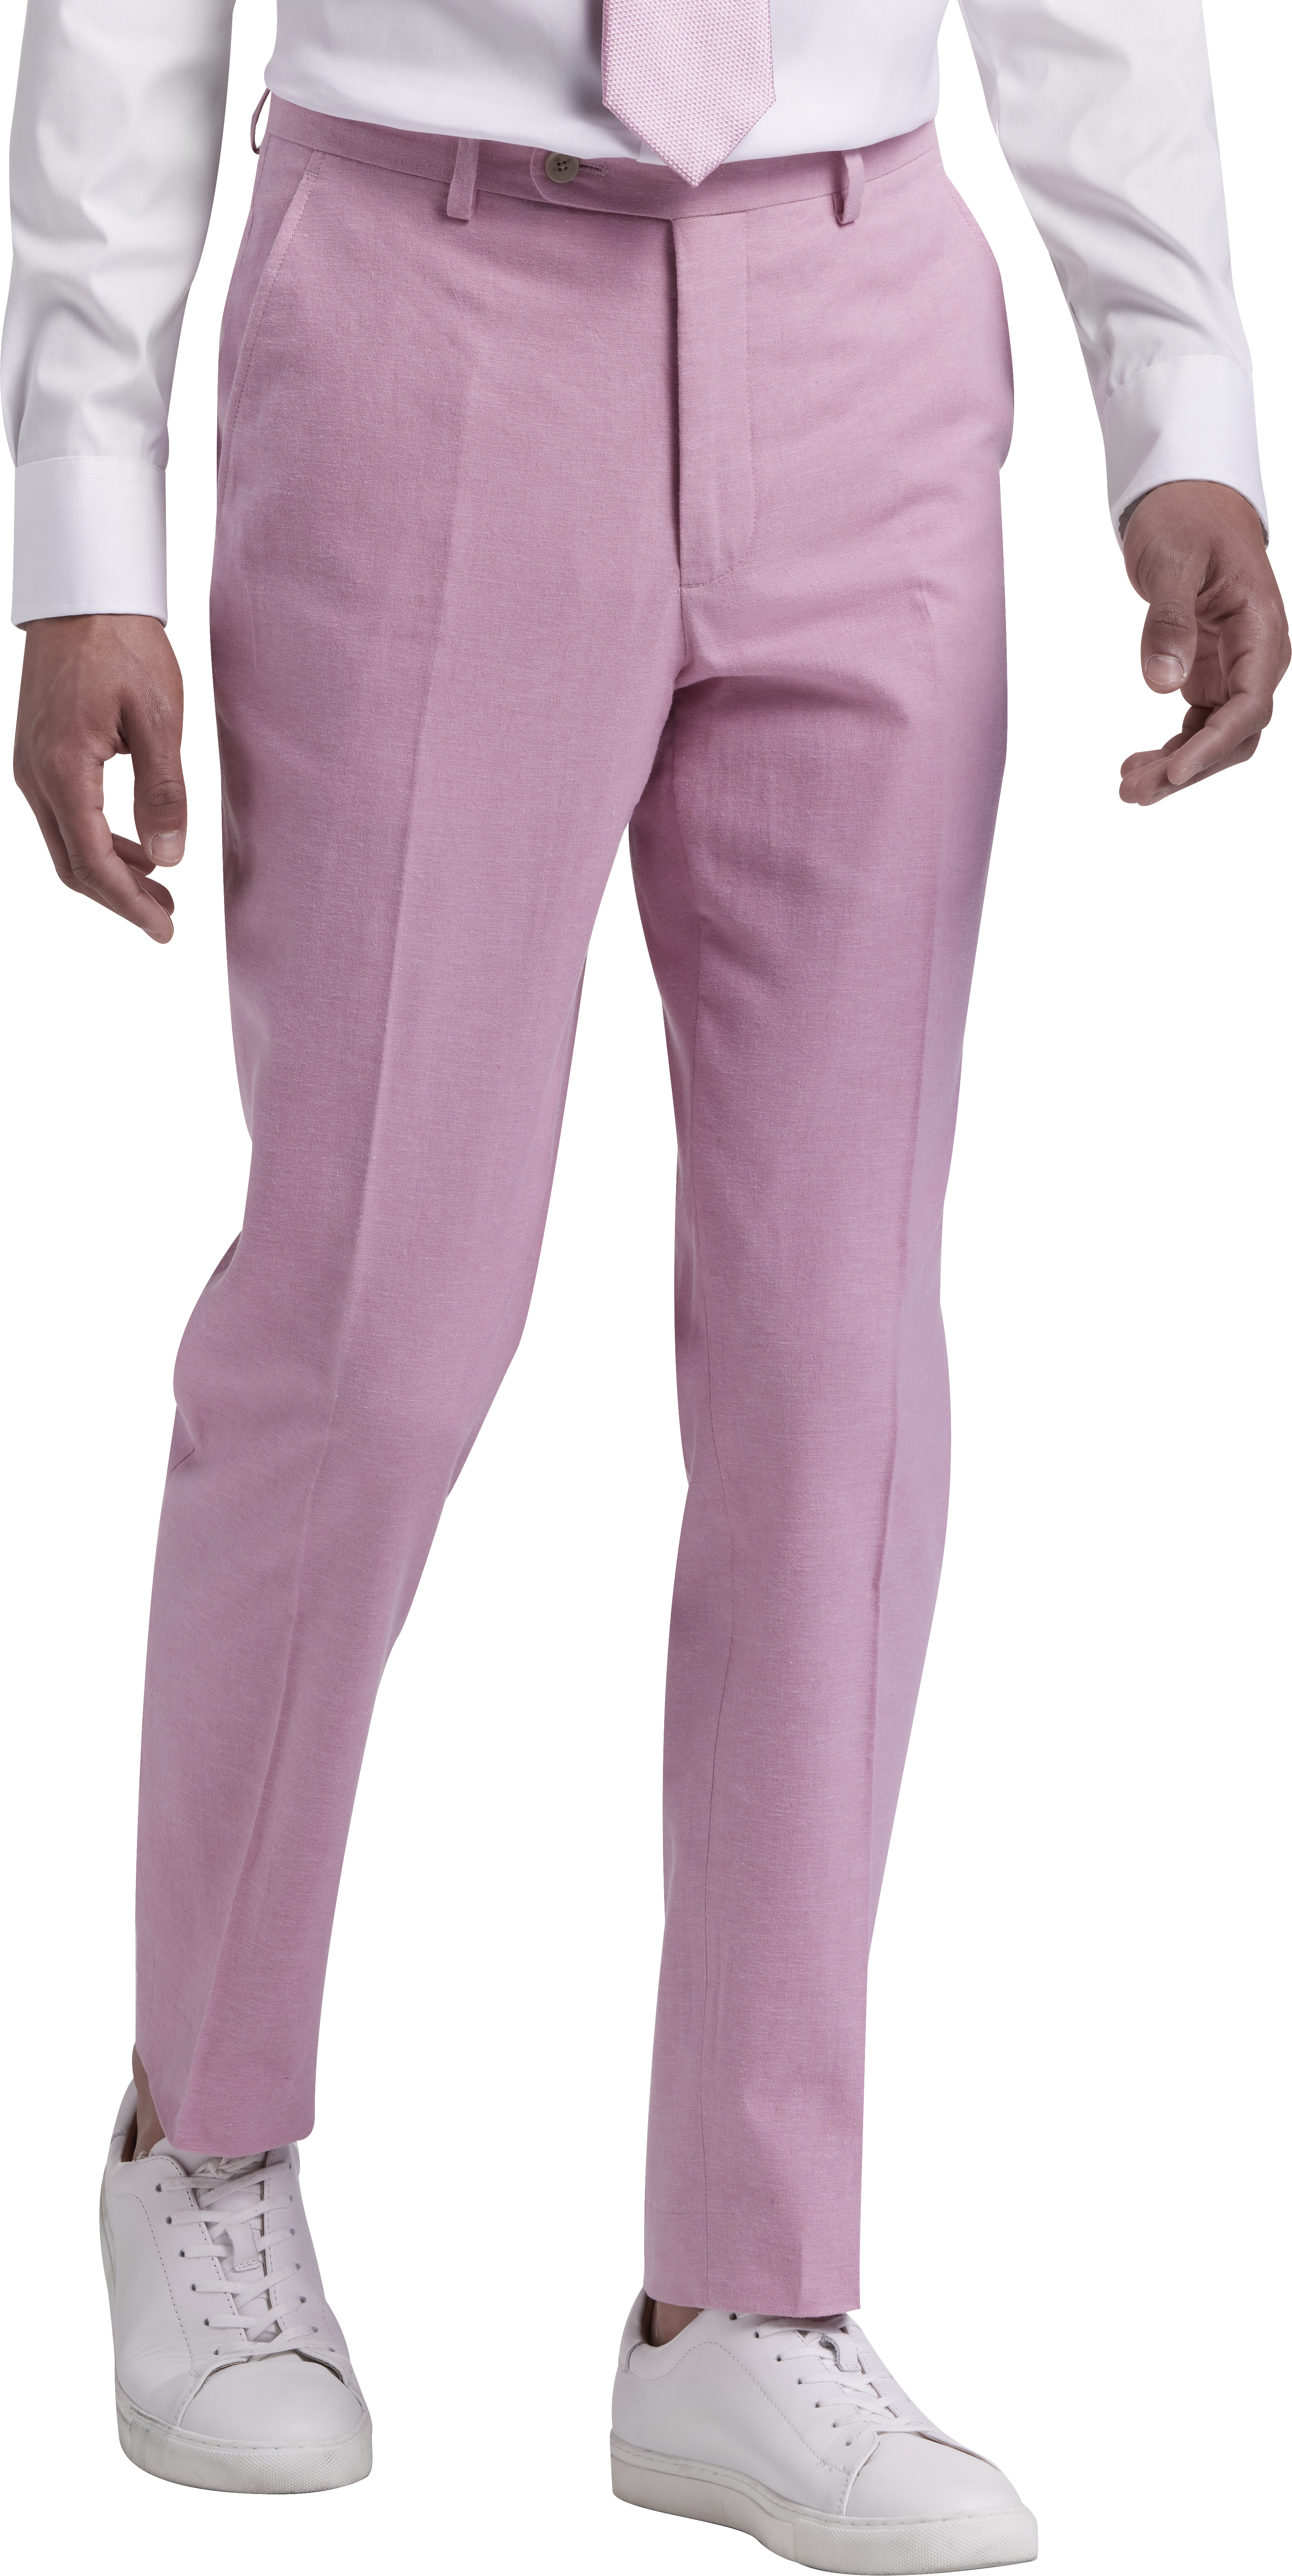 JOE Joseph Abboud Slim Fit Linen Blend Suit Separates Pants, Raspberry ...